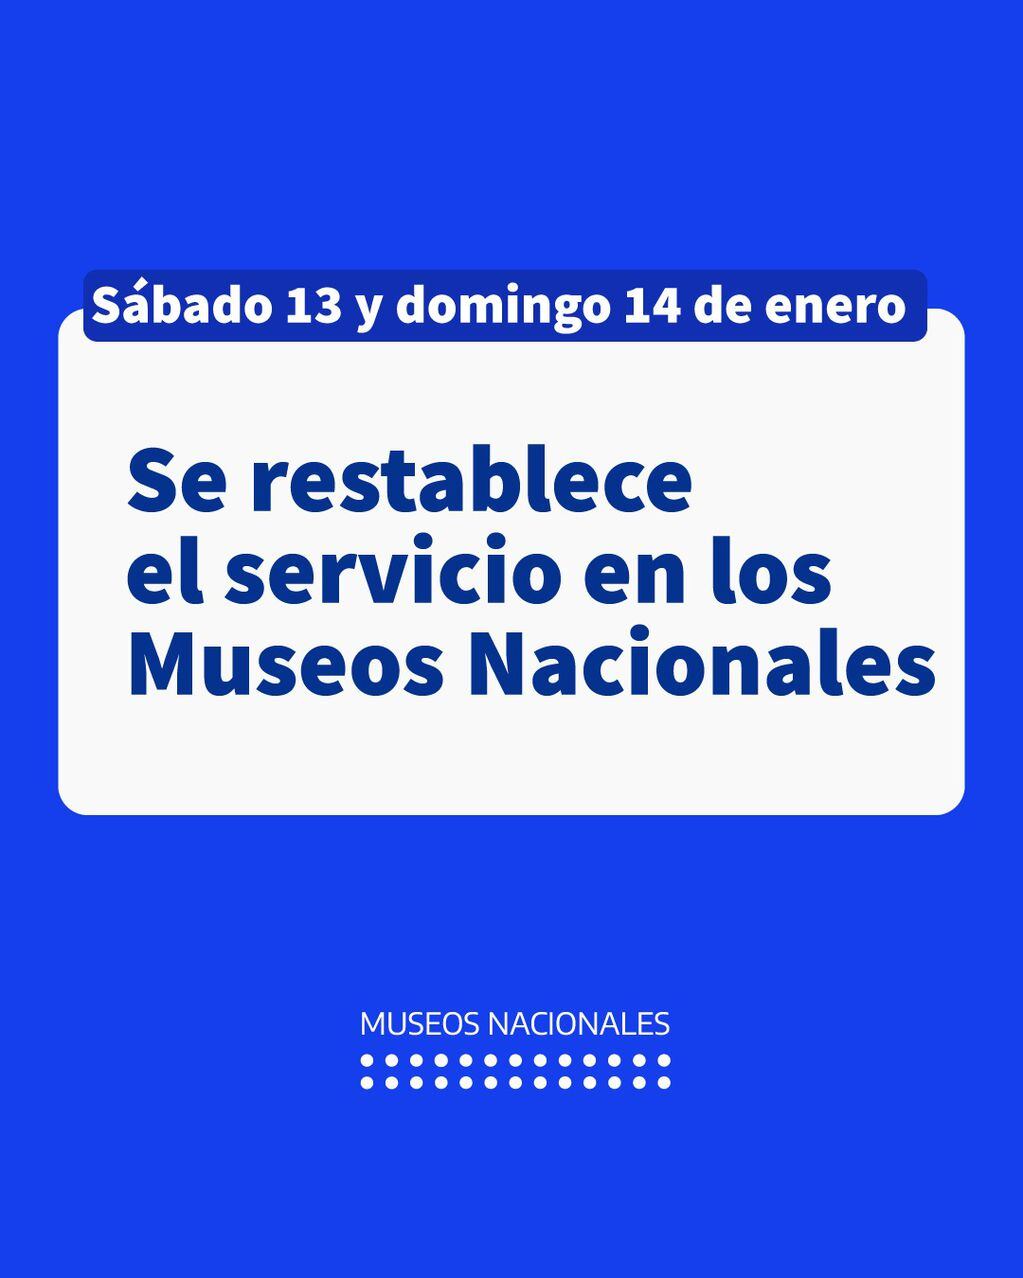 Comunicado de los Museos Nacionales.